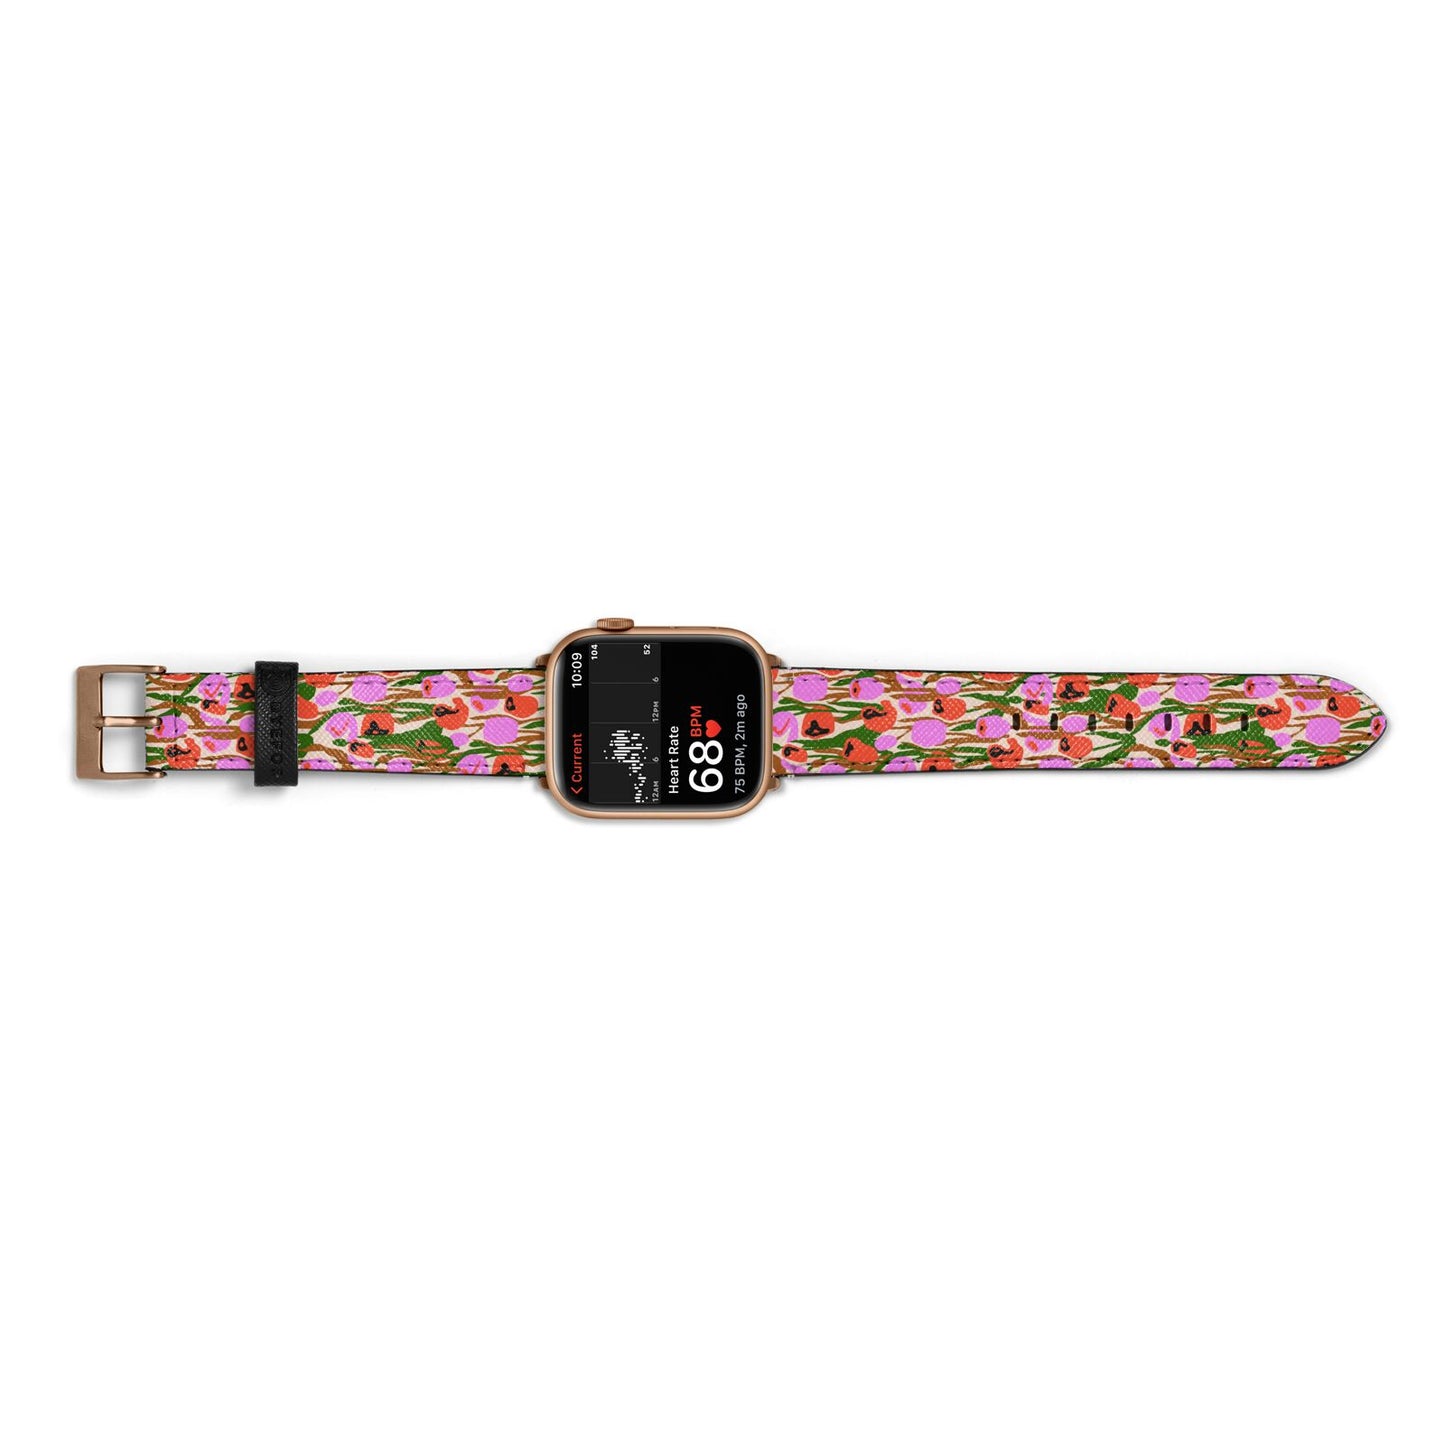 Floral Apple Watch Strap Size 38mm Landscape Image Gold Hardware